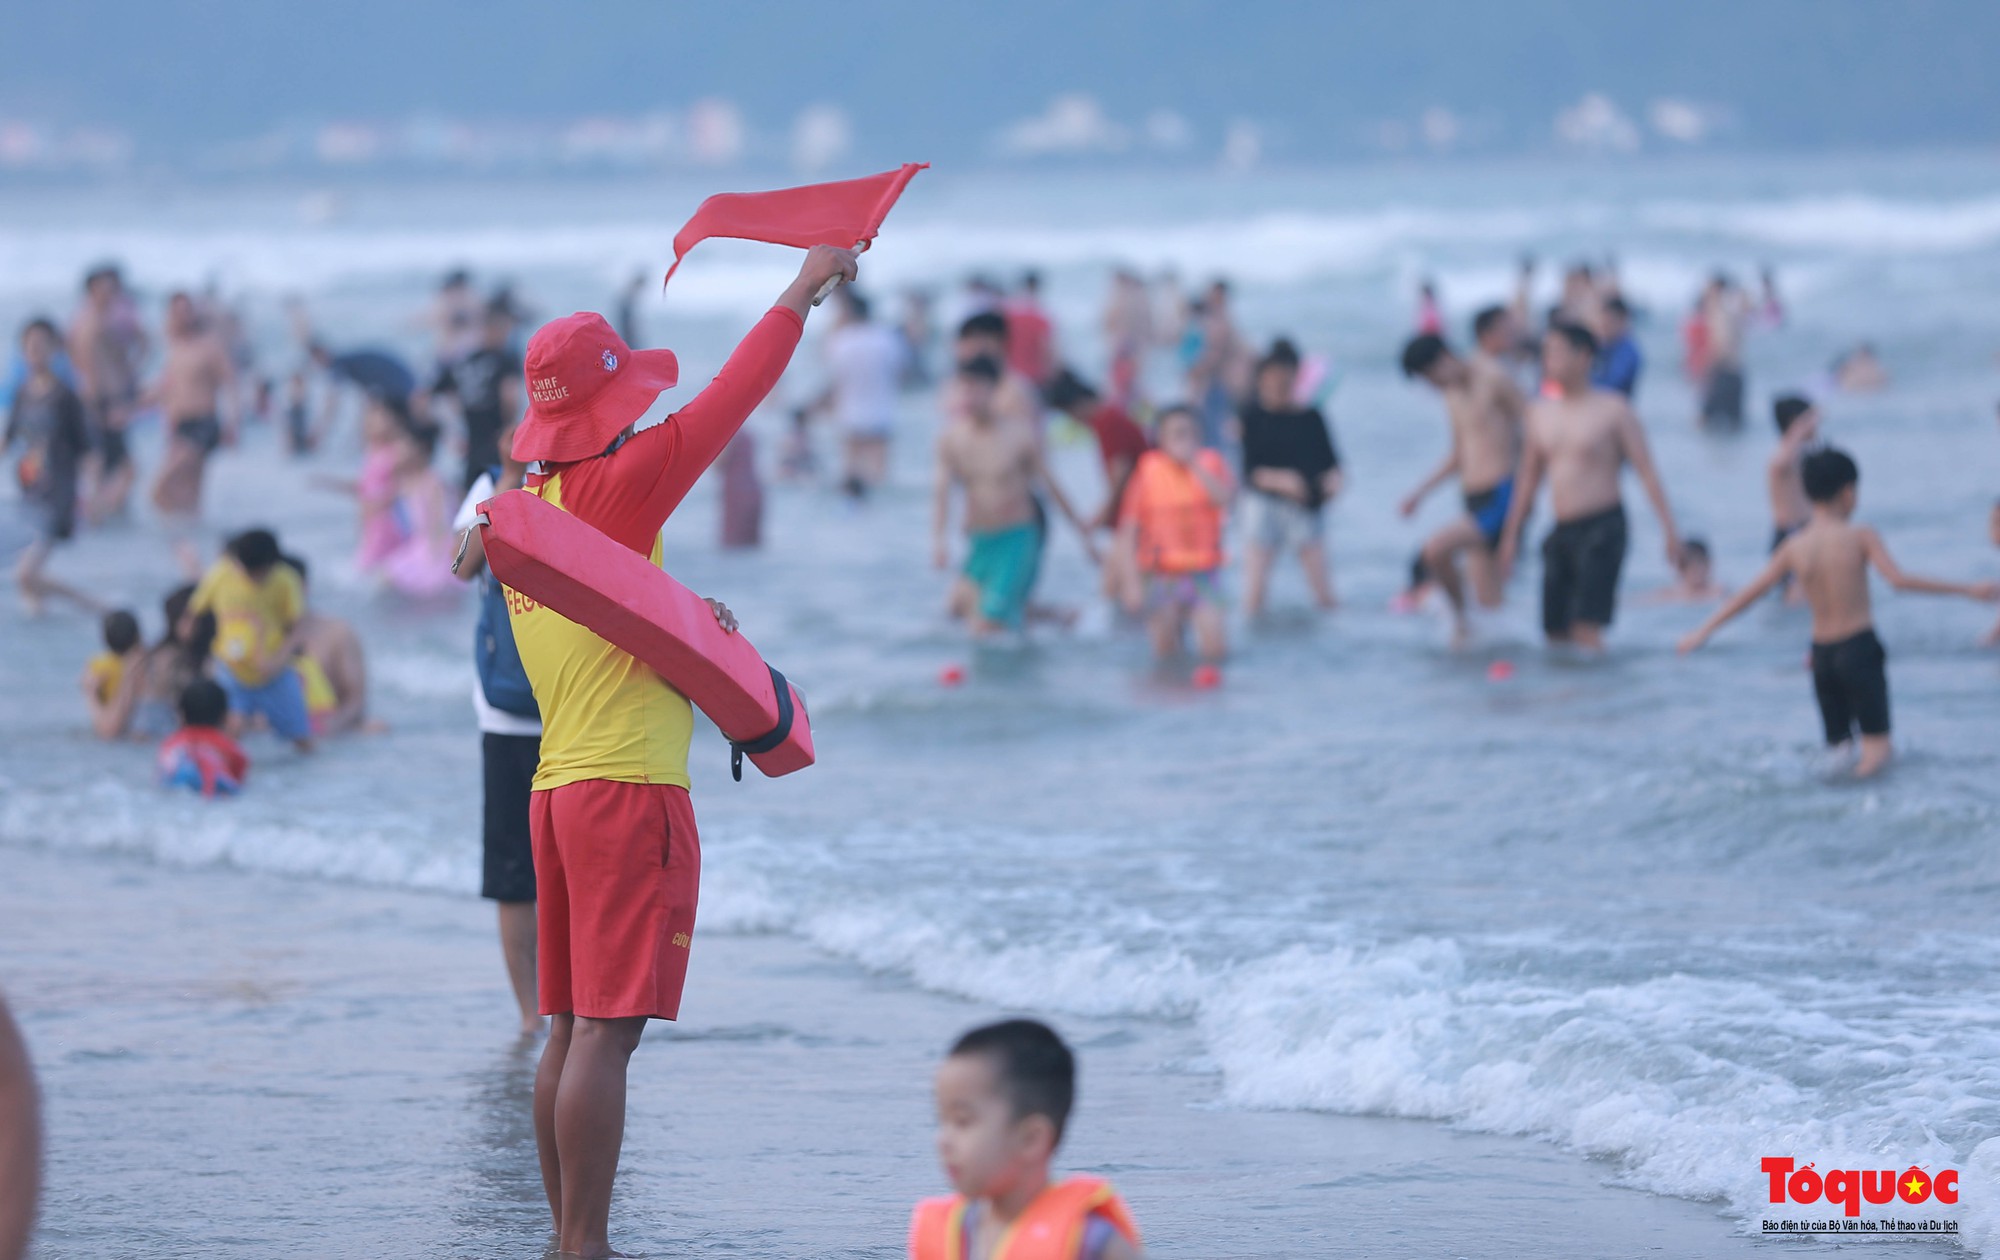 Hình ảnh chuyên gia quốc tế giúp Đội cứu hộ biển Đà Nẵng kỹ năng cứu hộ - Ảnh 17.